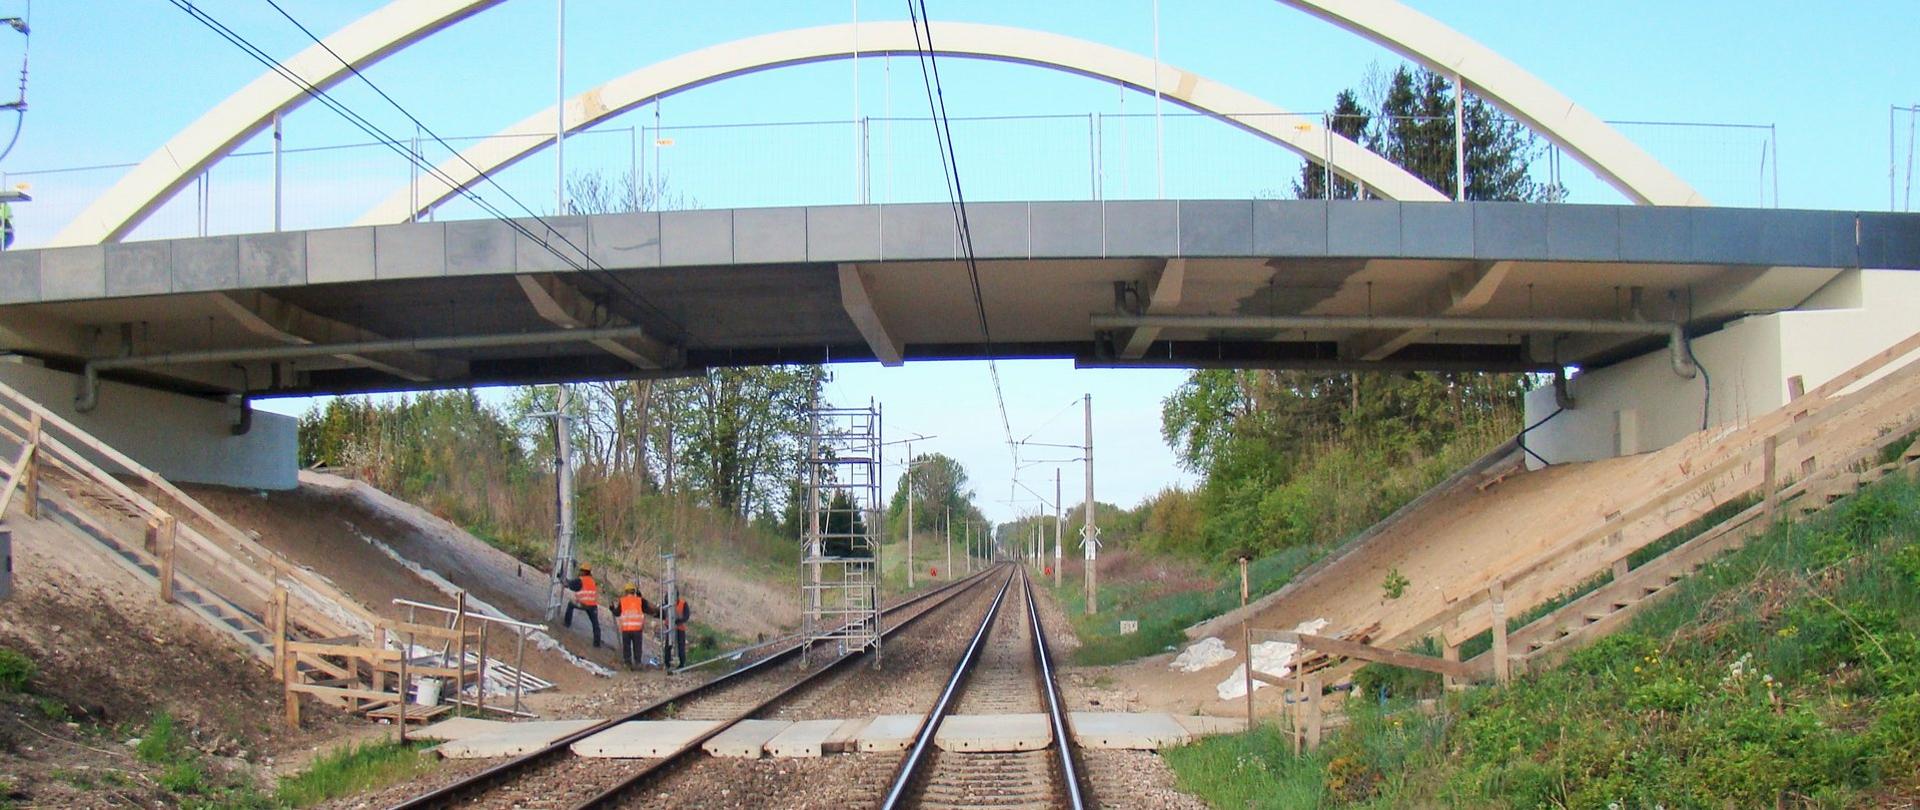 zdjęcie budowy przystanku kolejowego